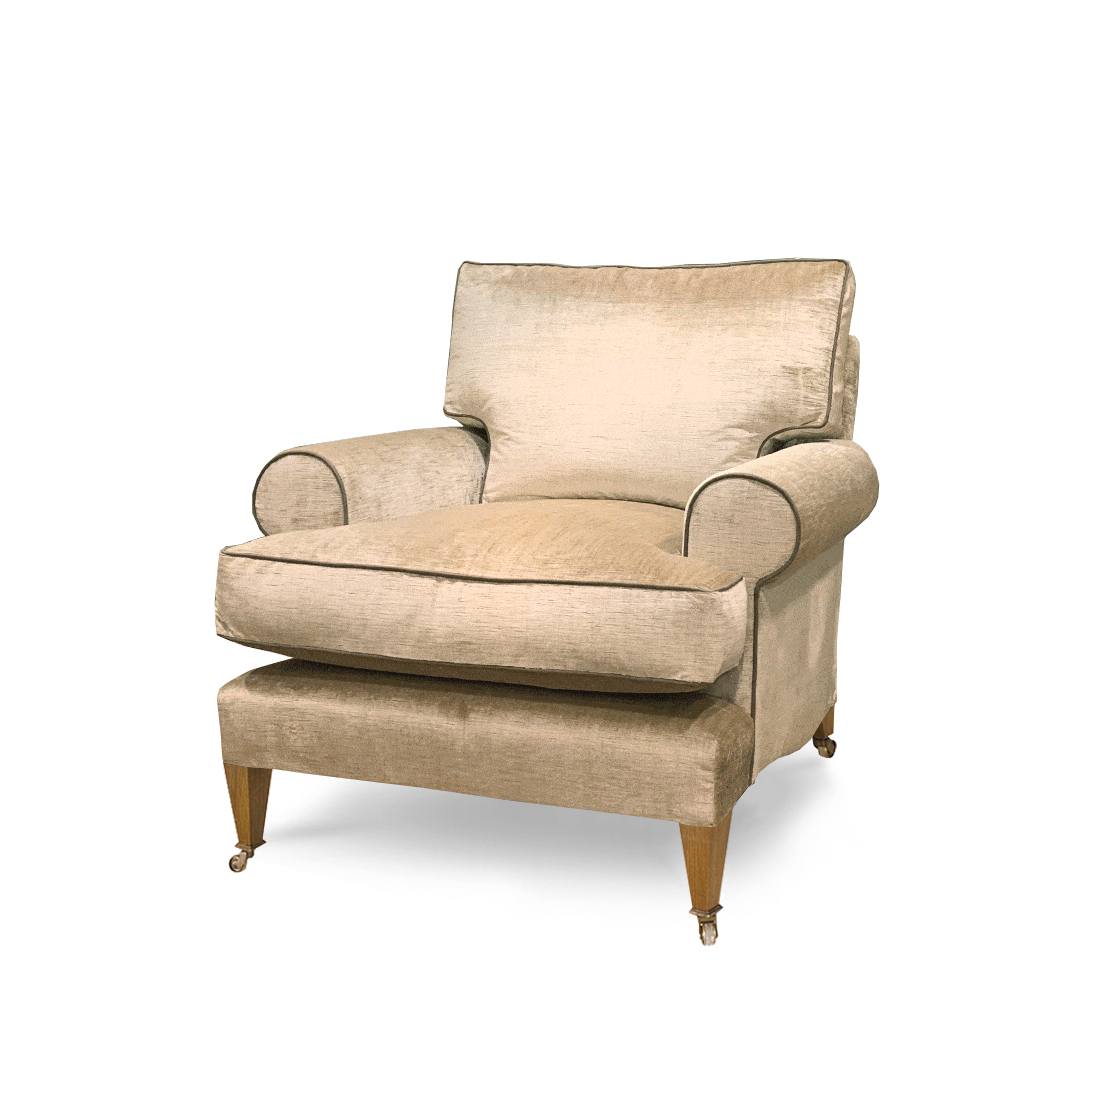 Marlborough chair in Como silk velvet - Biscuit - Beaumont & Fletcher